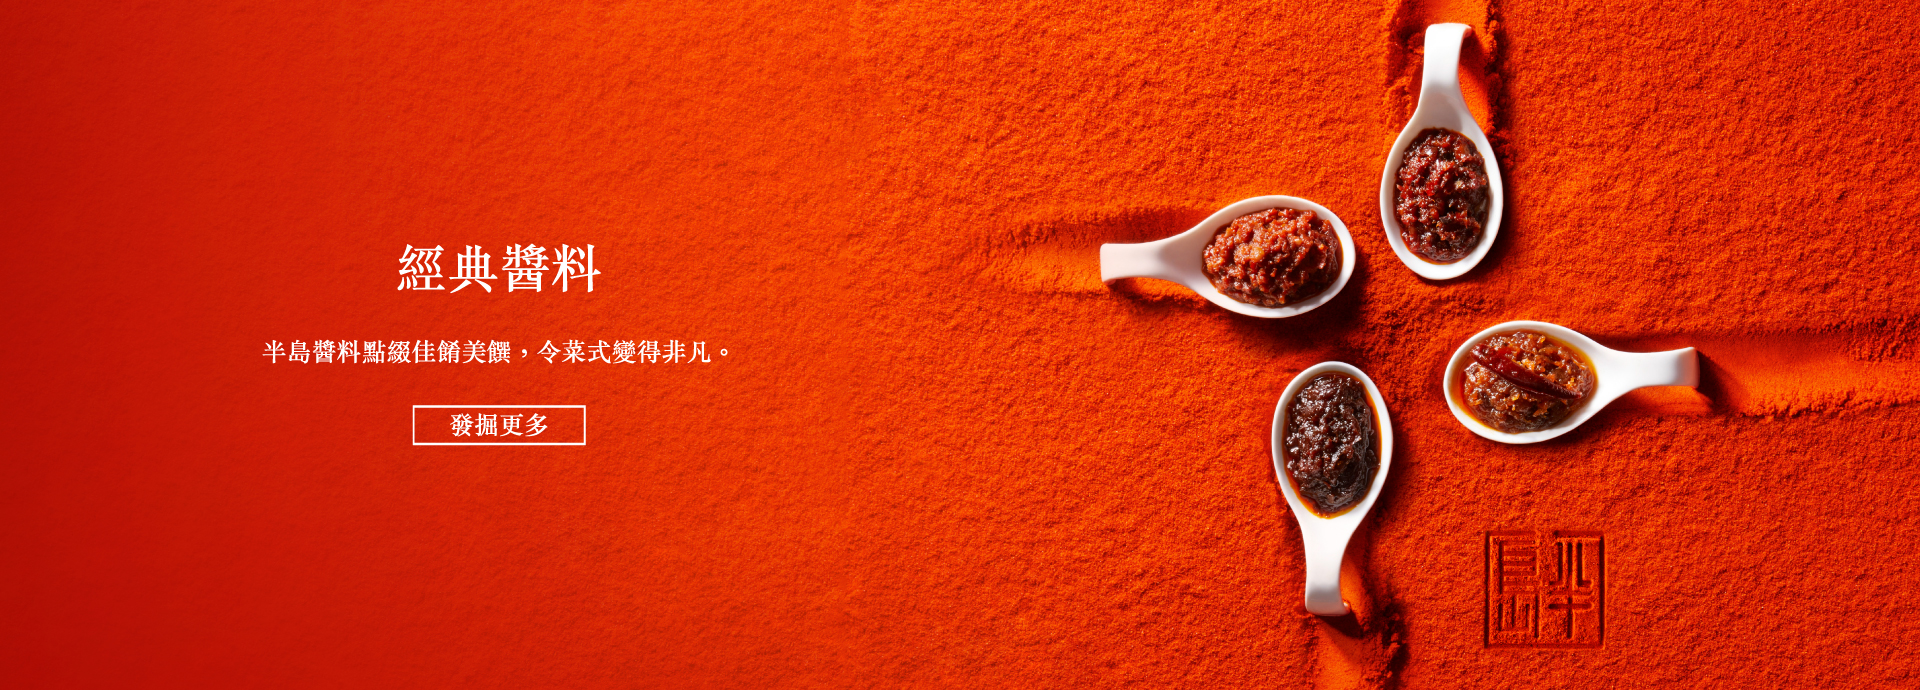 香港半島紅色罐裝馳名中式醬